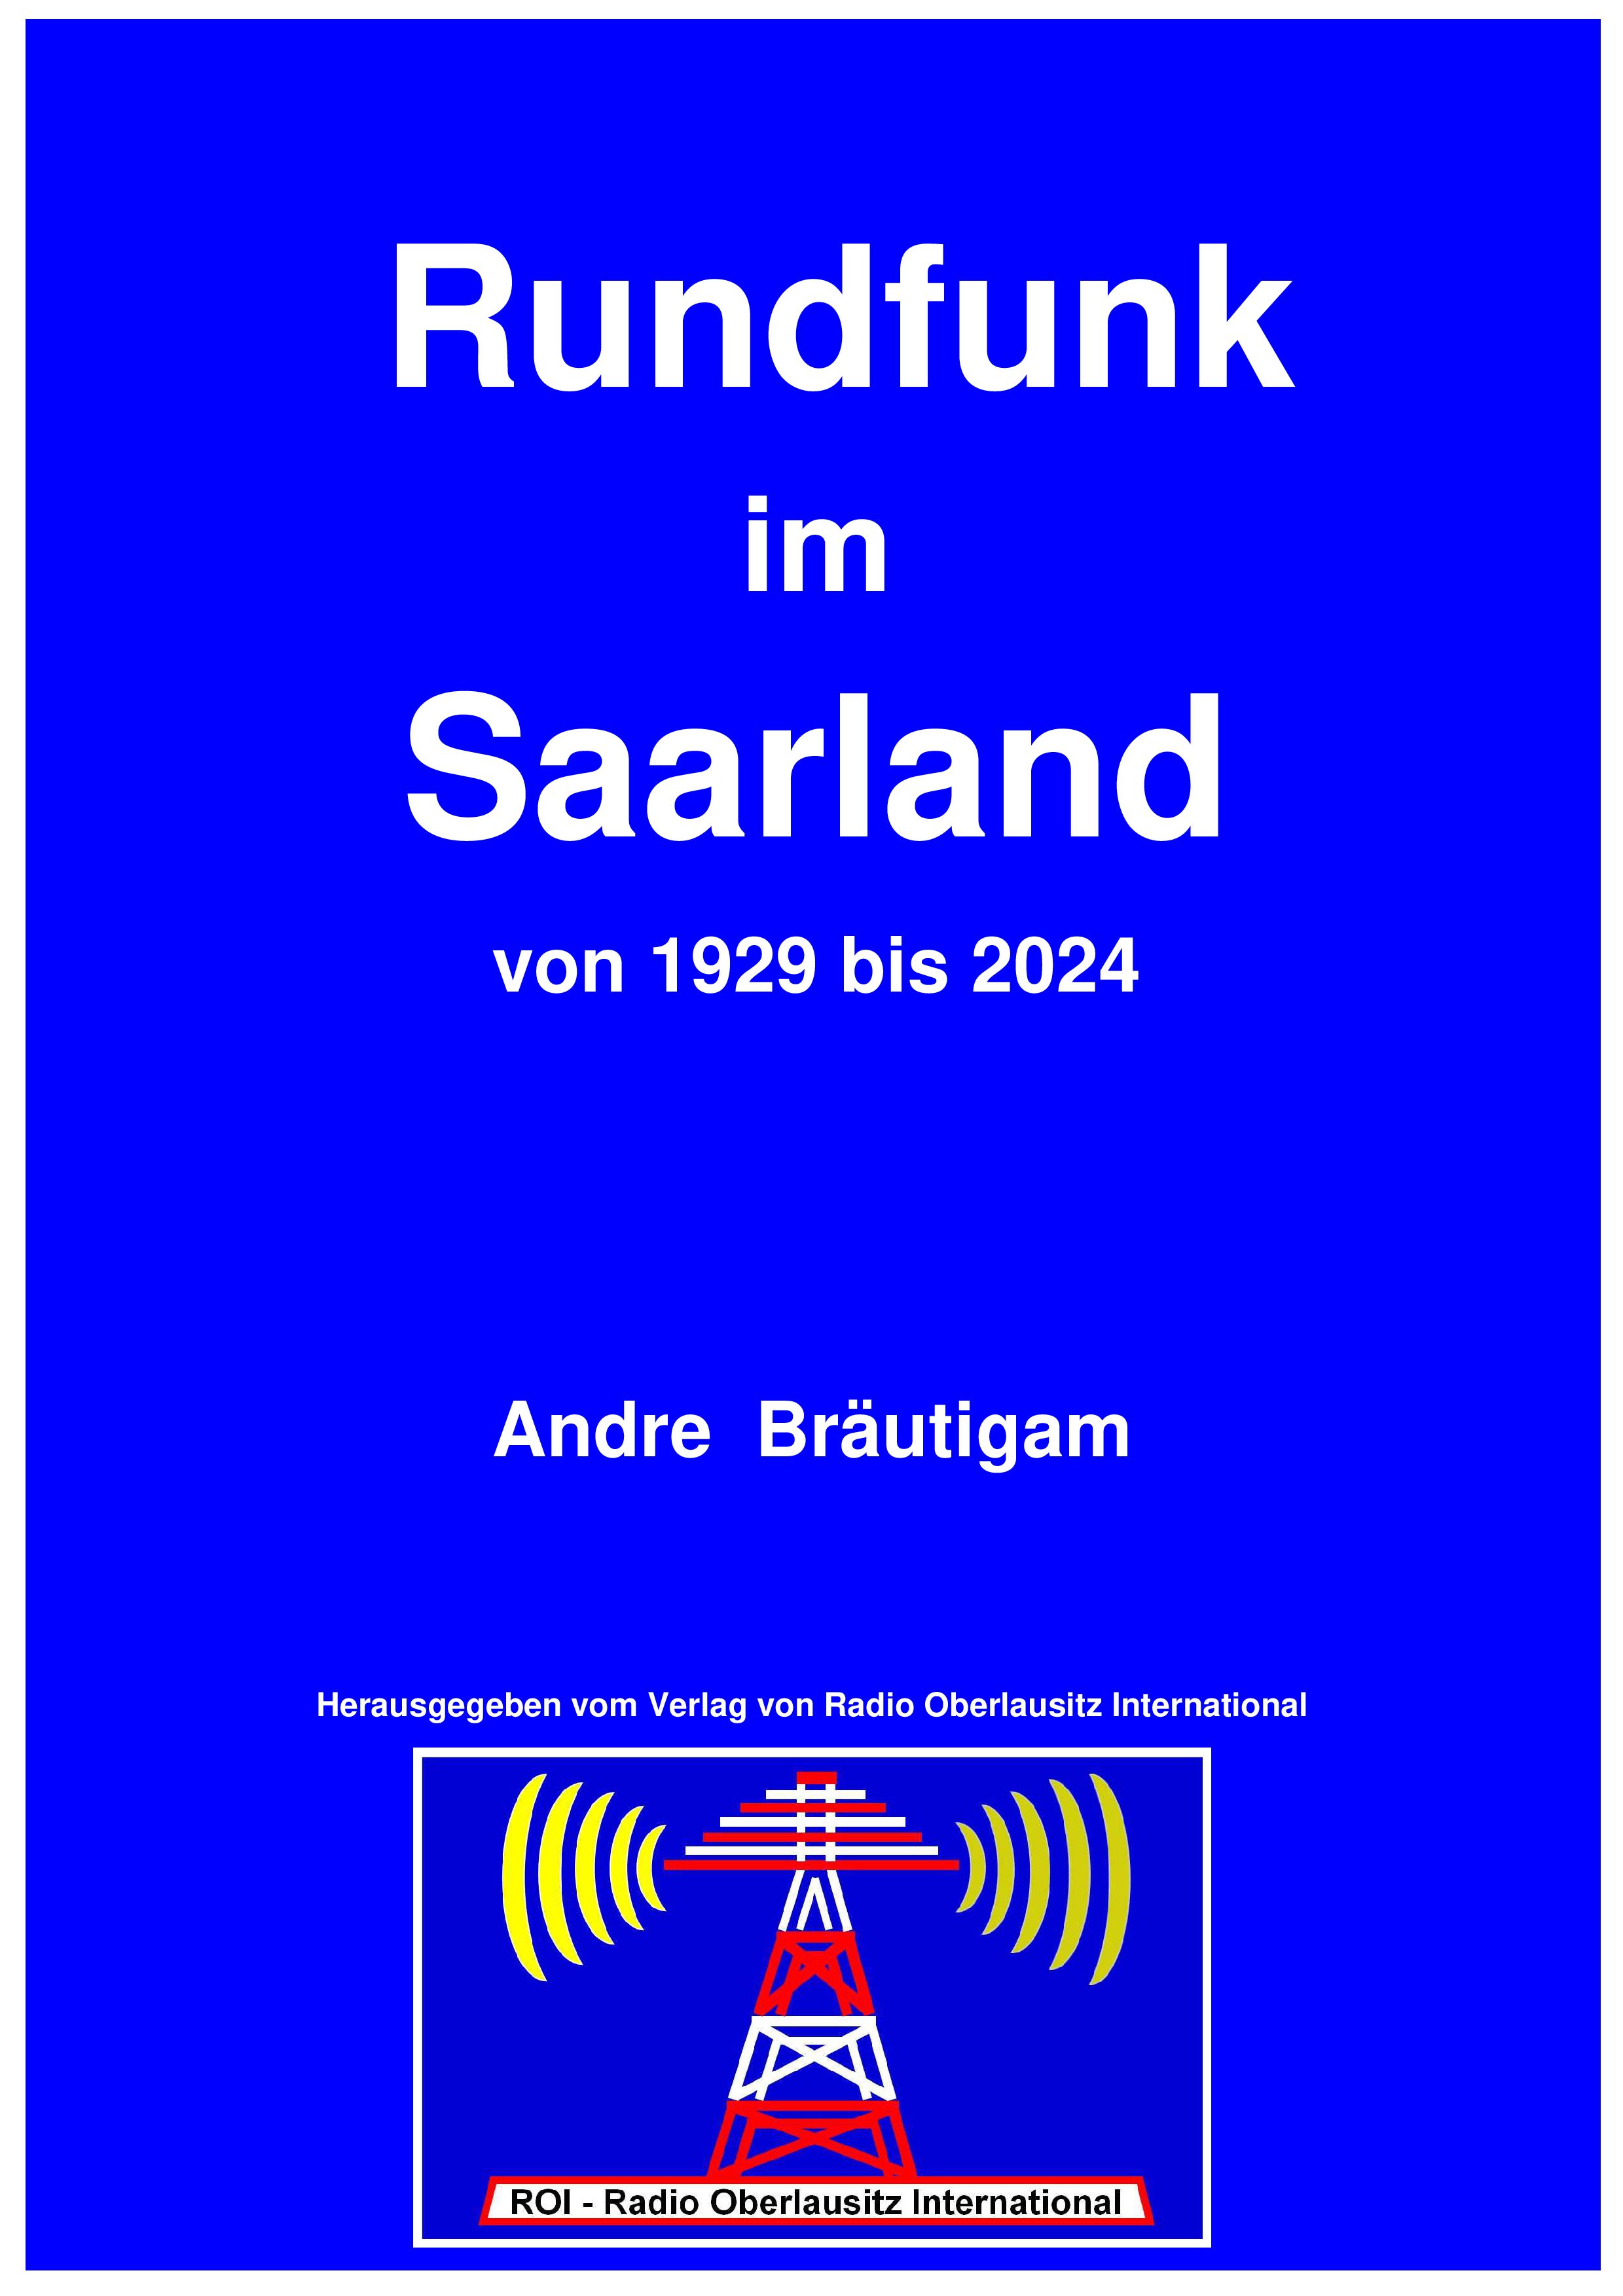 Rundfunk im Saarland von 1929 bis 2024